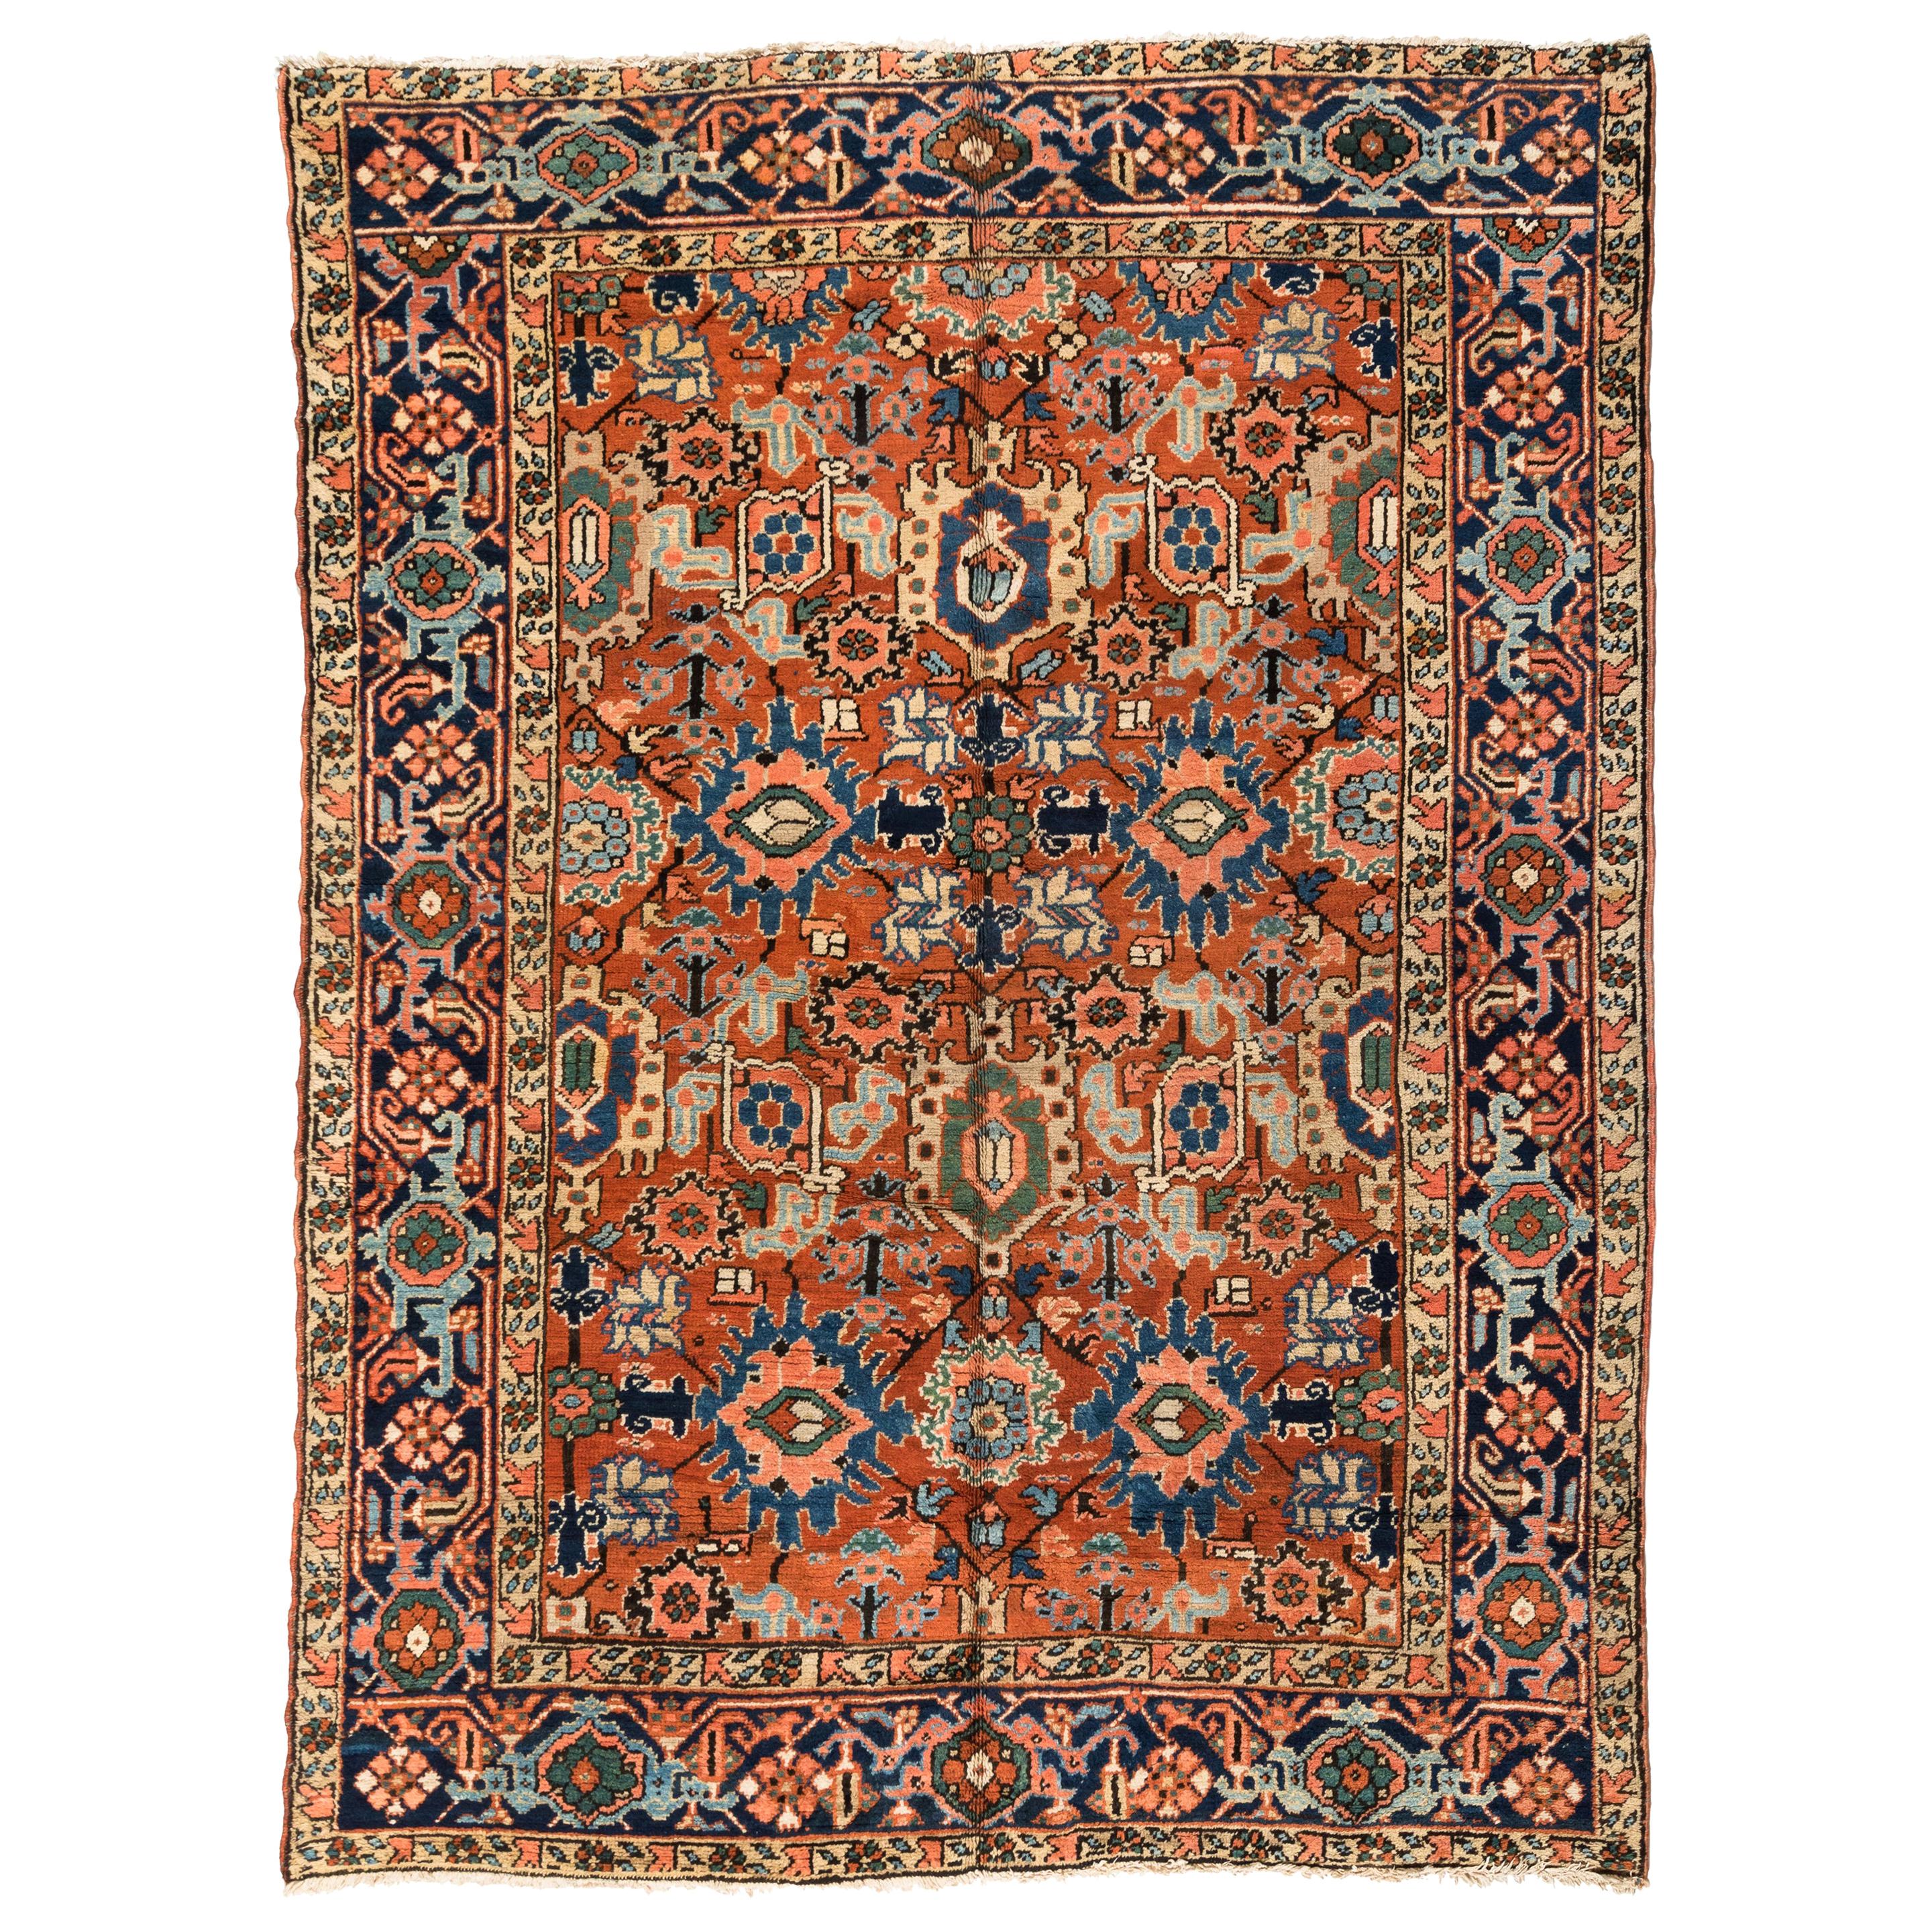 Antiker persischer Heriz-Teppich in Marineblau, Rost und Braun, Grün  8,2 x 10,6 Fuß